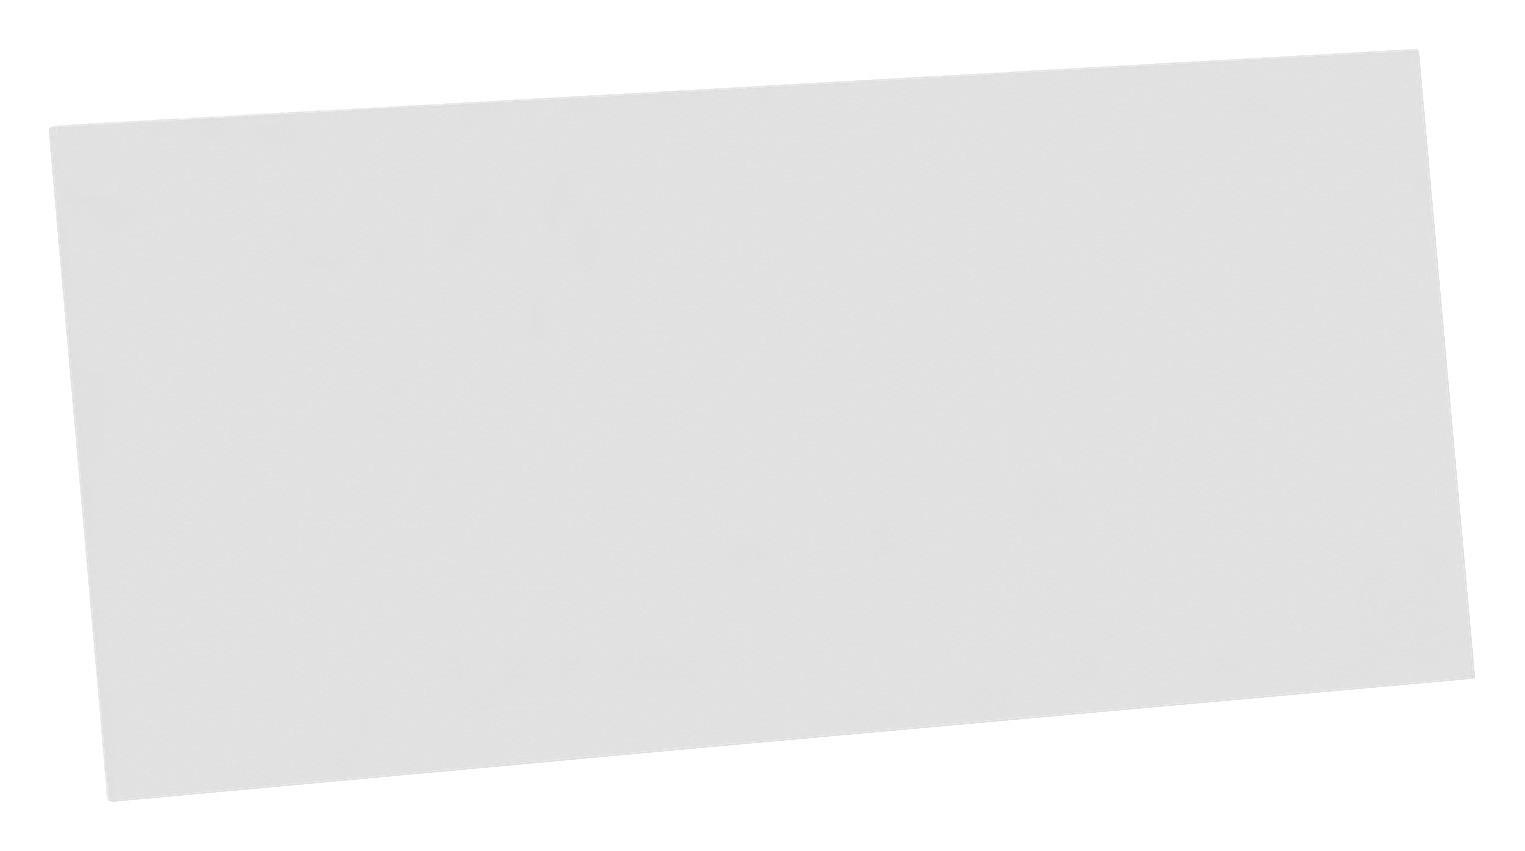 KOPFTEIL 175/45,5/1,6 cm  Weiß  - Weiß, KONVENTIONELL (175/45,5/1,6cm) - Hom`in